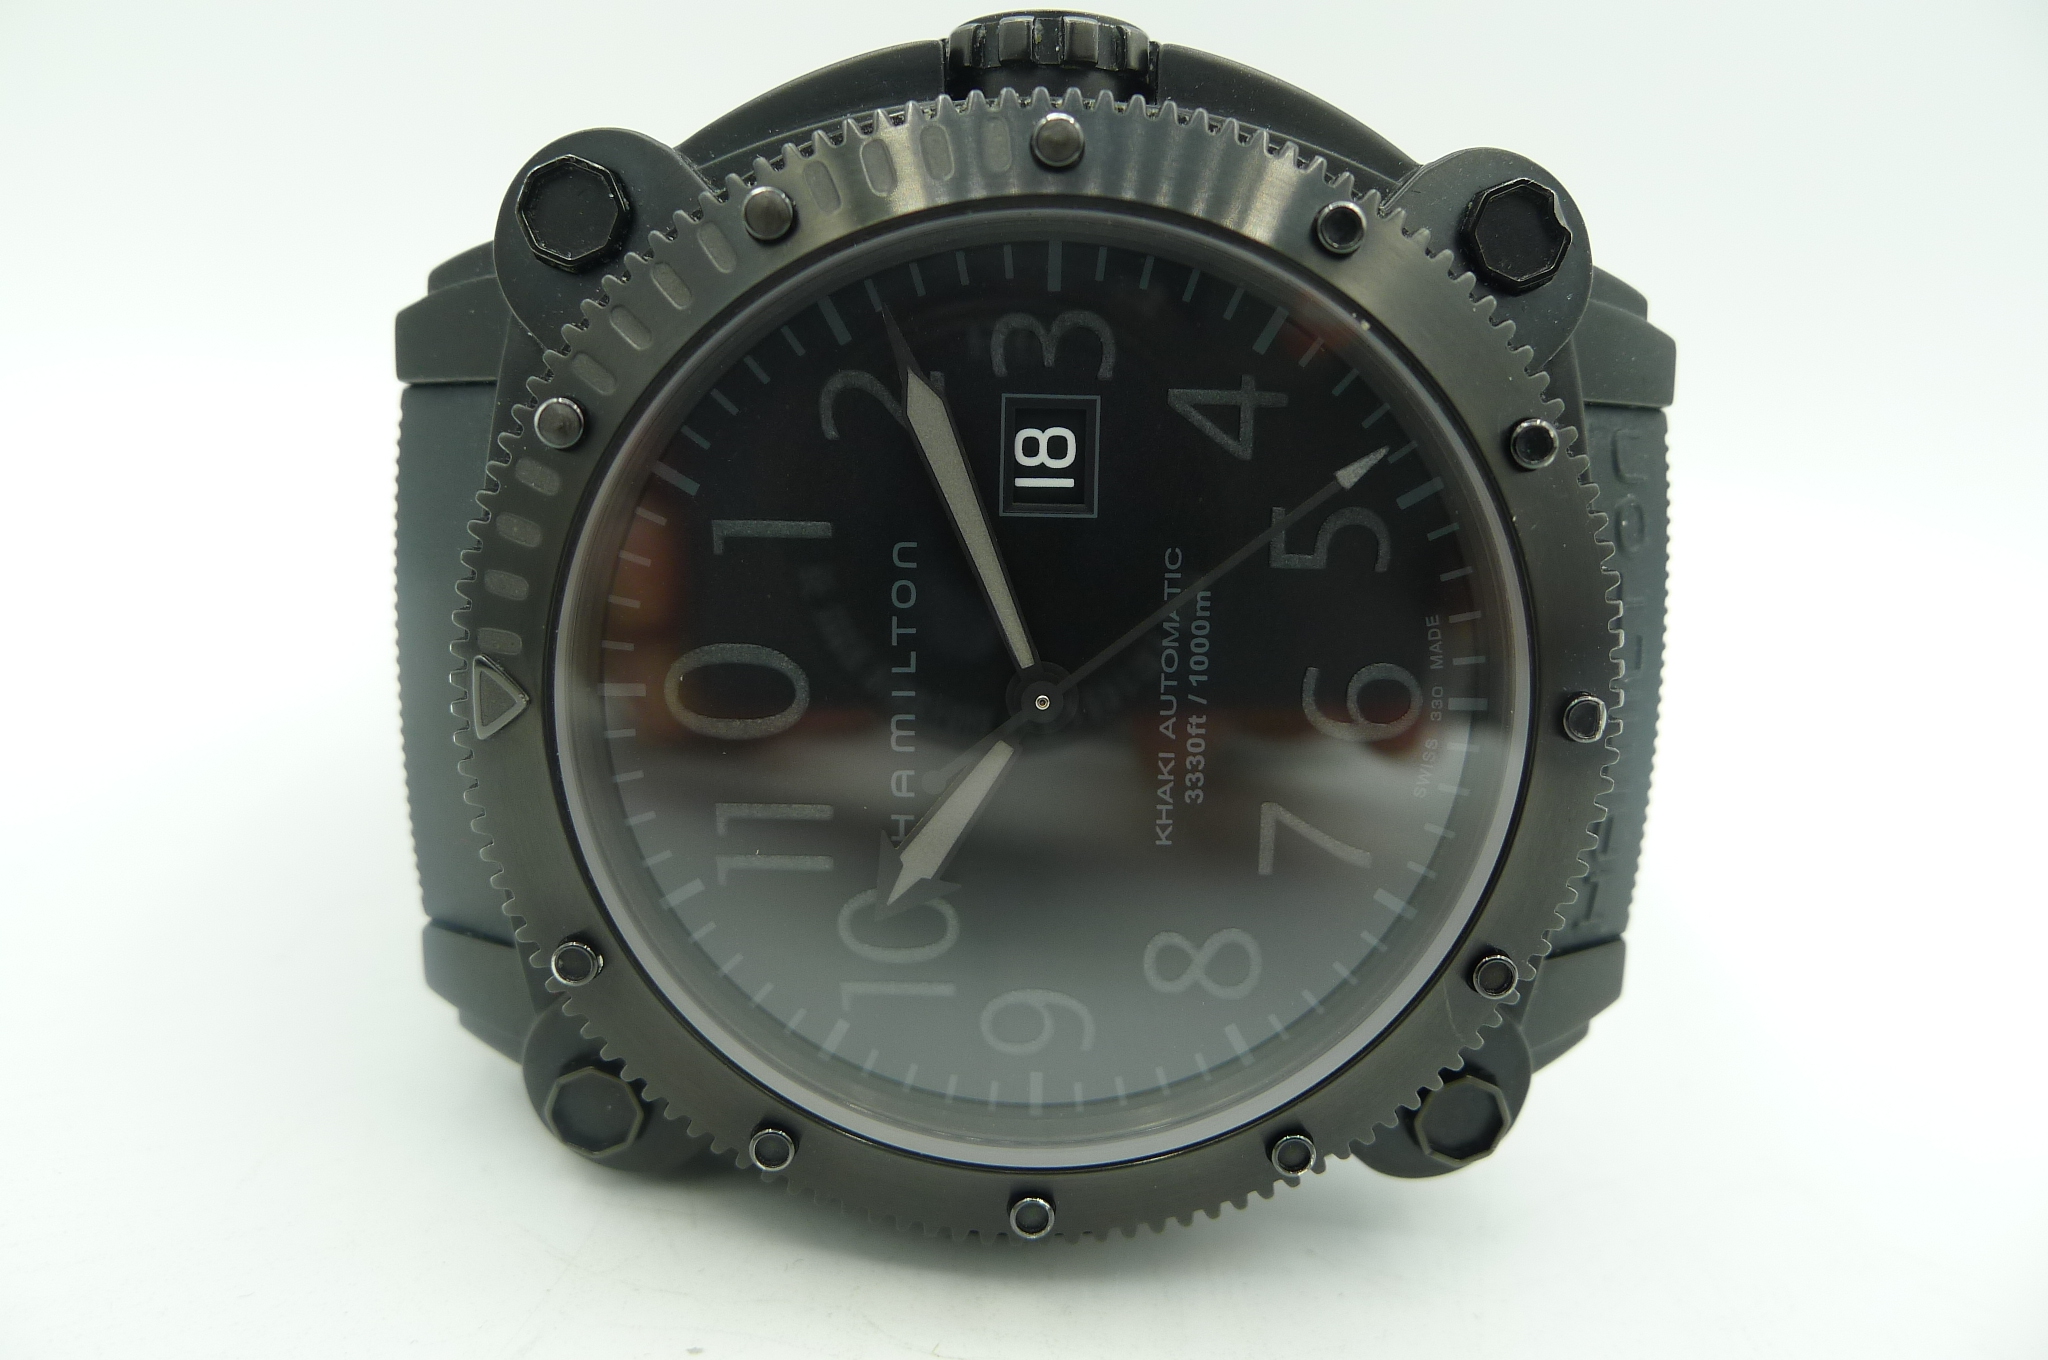 HAMILTON BELOW ZERO H785850 – Militare Watch